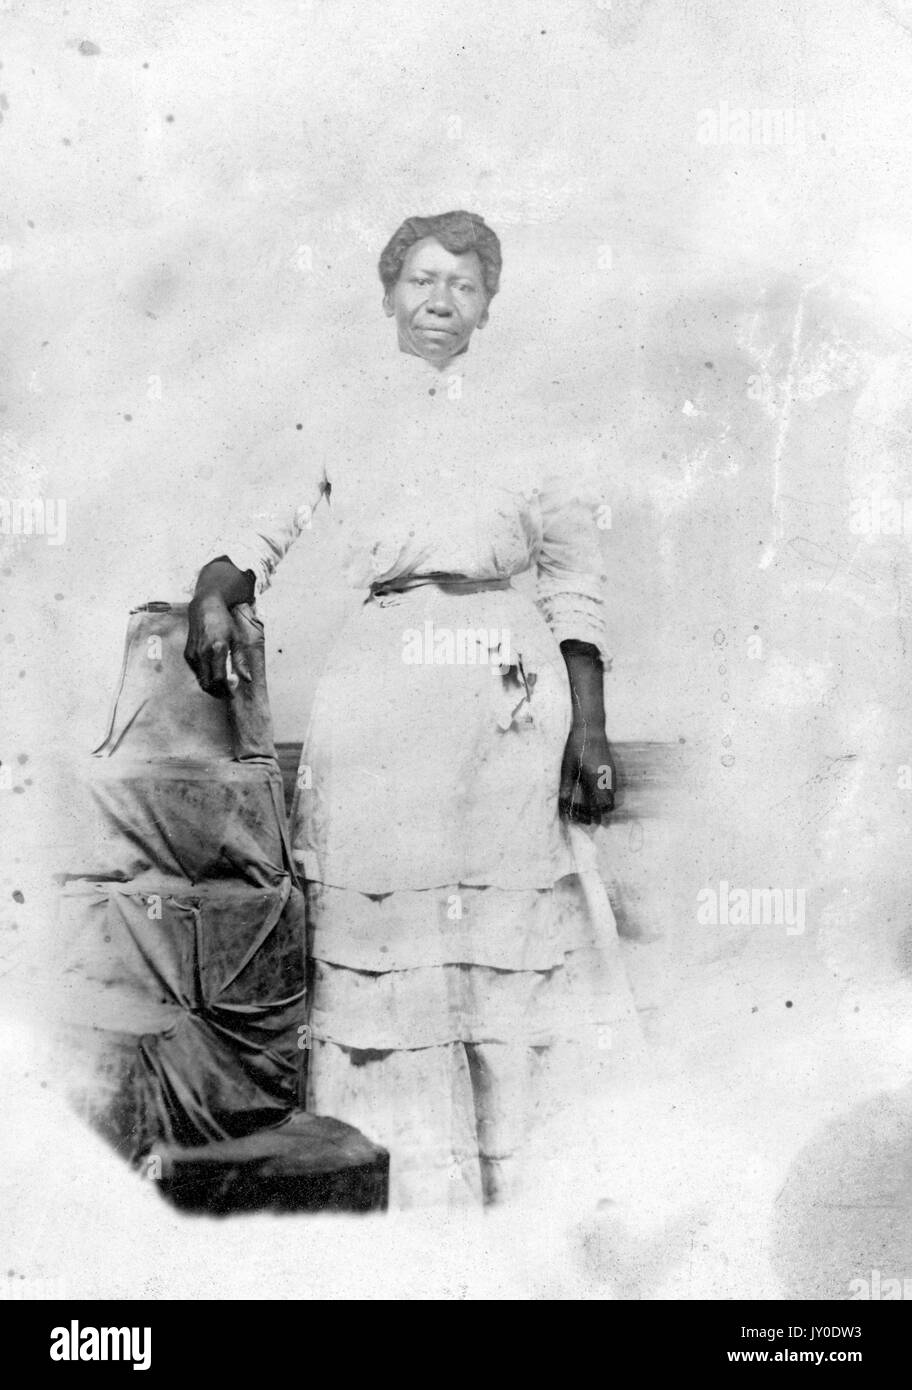 Ritratto di un americano africano donna in piedi accanto a un mucchio di stoffa-confezionati con un sottosopra la benna sulla parte superiore, indossa una luce lungo abito colorato aggraffato alla cintura, il suo braccio destro è appoggiata sulla benna e il suo braccio sinistro è dal suo lato, 1915. Foto Stock